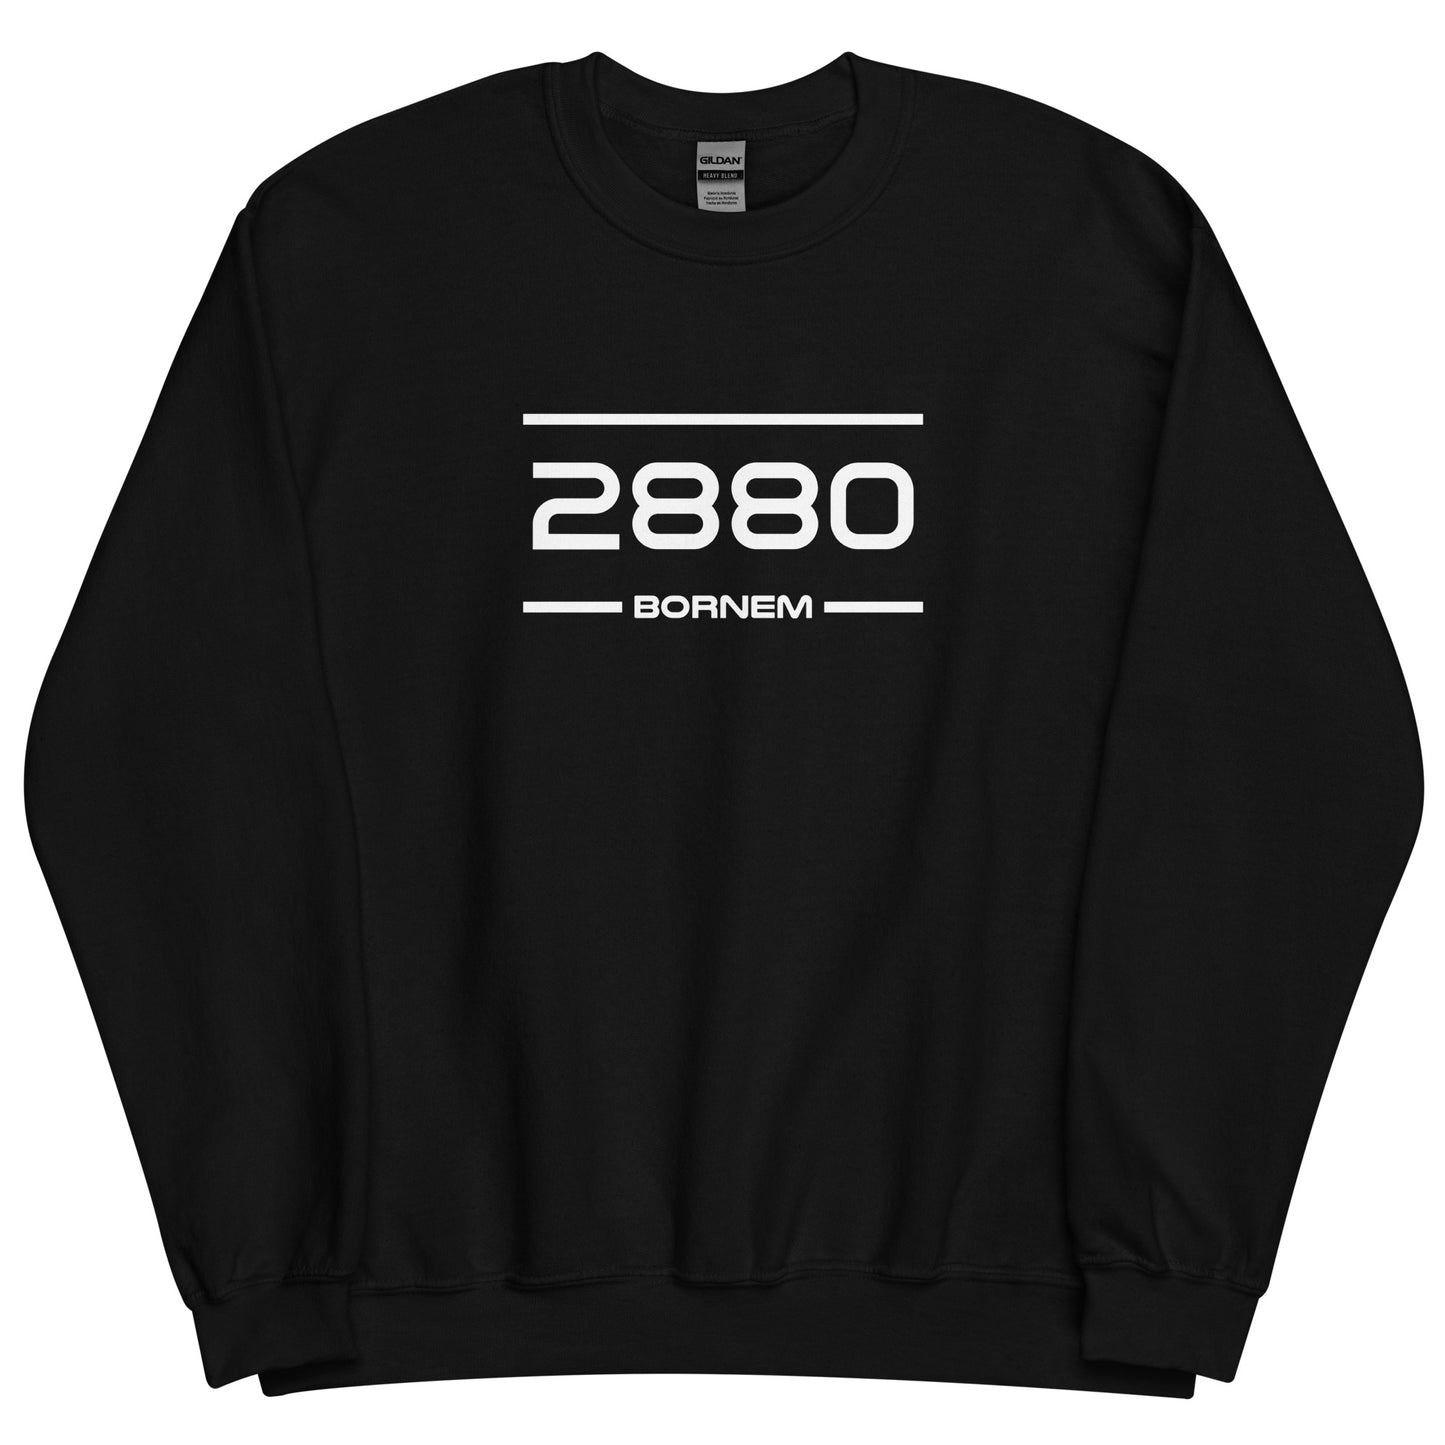 Sweater - 2880 - Bornem (M/V)